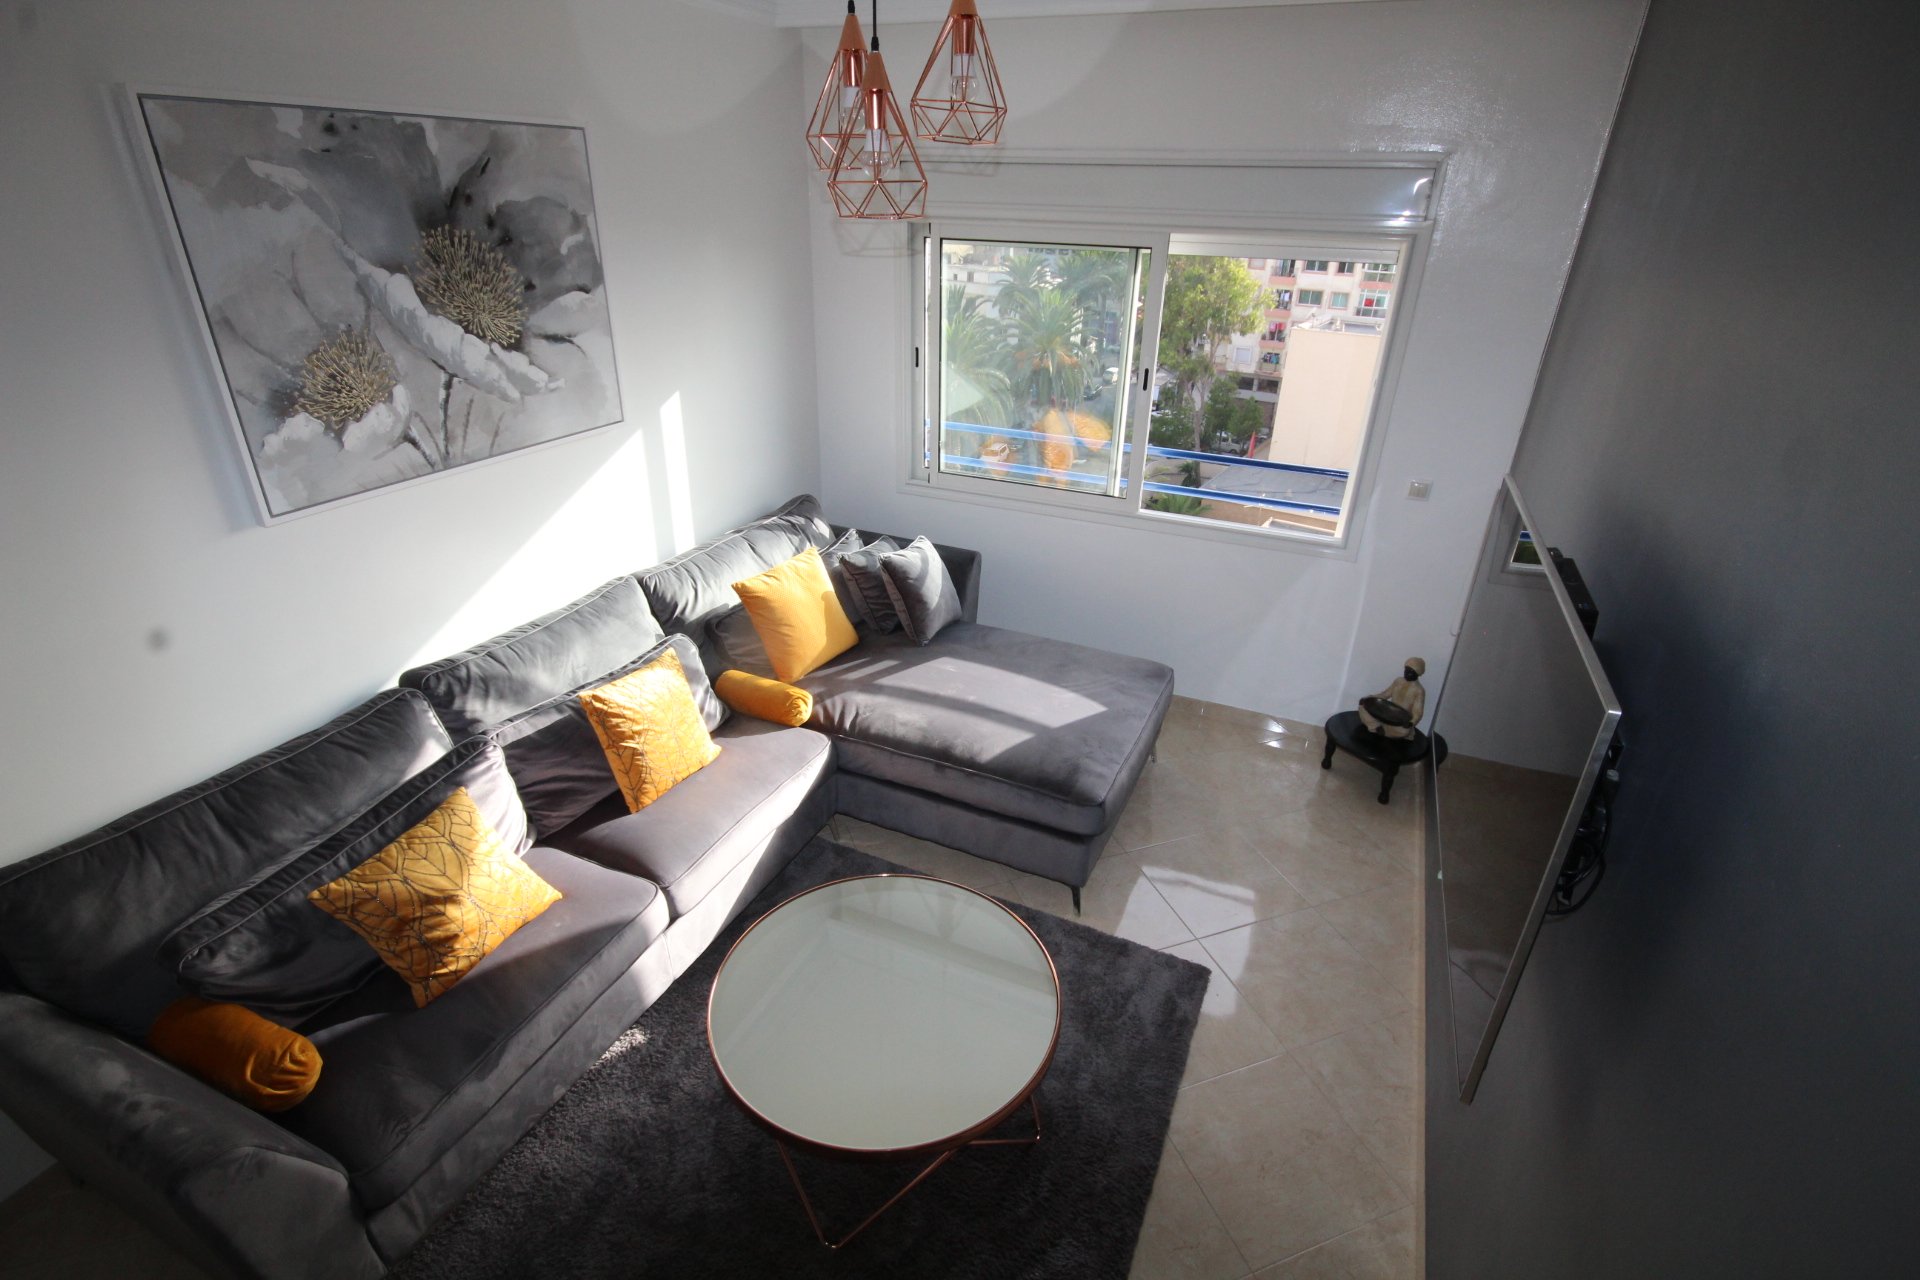 Maroc, Casablanca, Bourgogne à saisir appartement chic de 2 chambres à petit prix